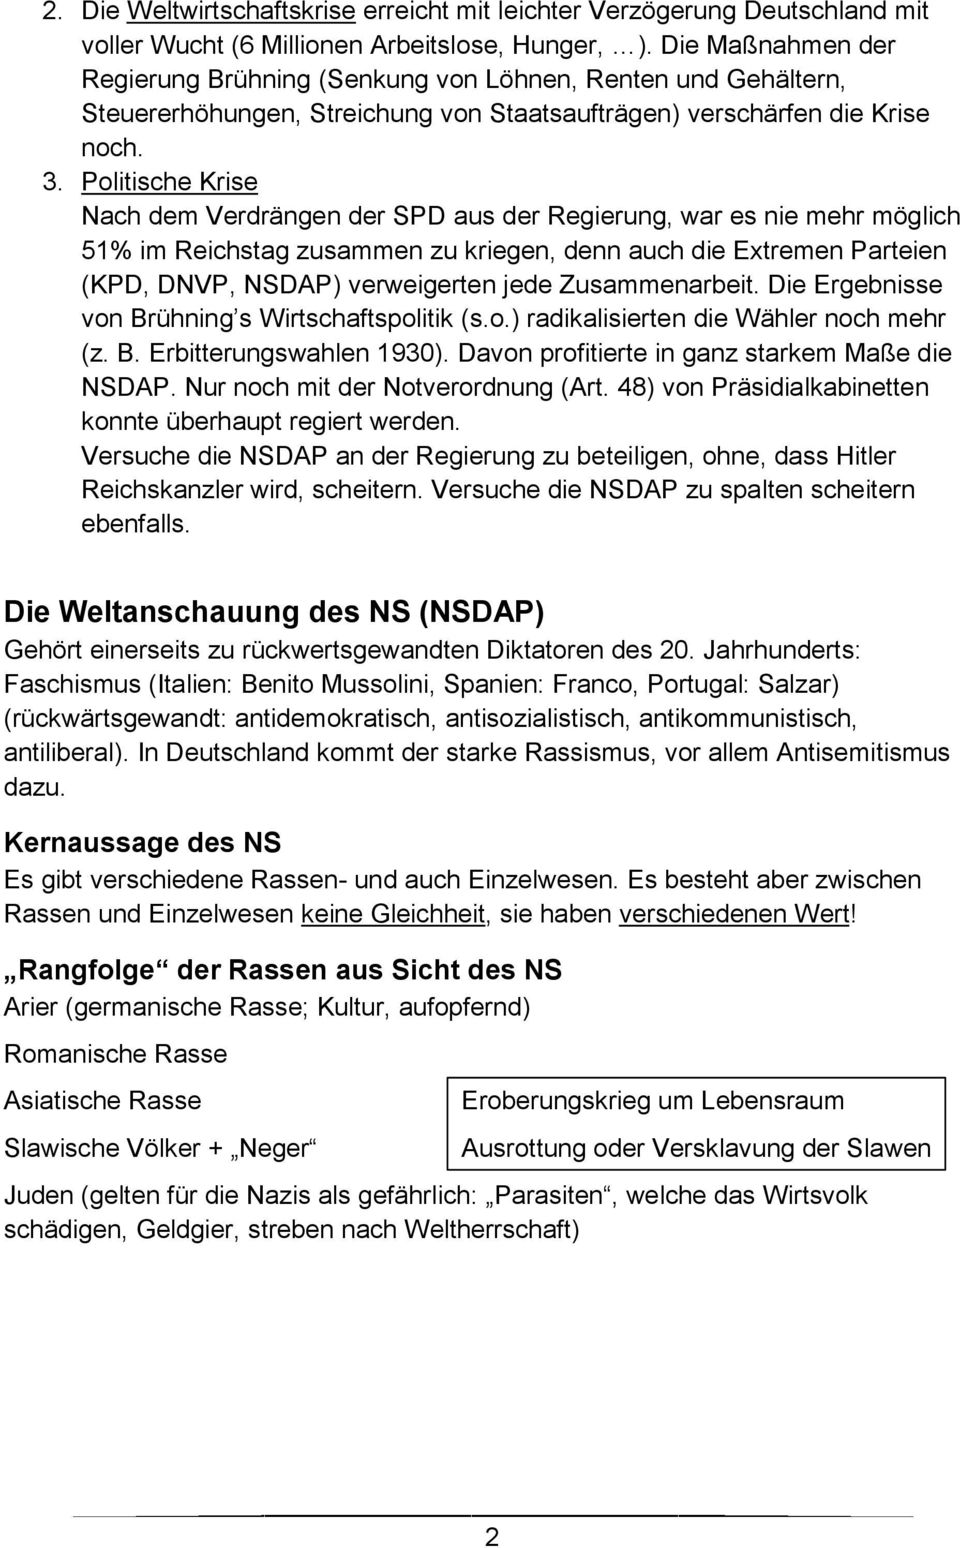 Politische Krise Nach dem Verdrängen der SPD aus der Regierung, war es nie mehr möglich 51% im Reichstag zusammen zu kriegen, denn auch die Extremen Parteien (KPD, DNVP, NSDAP) verweigerten jede